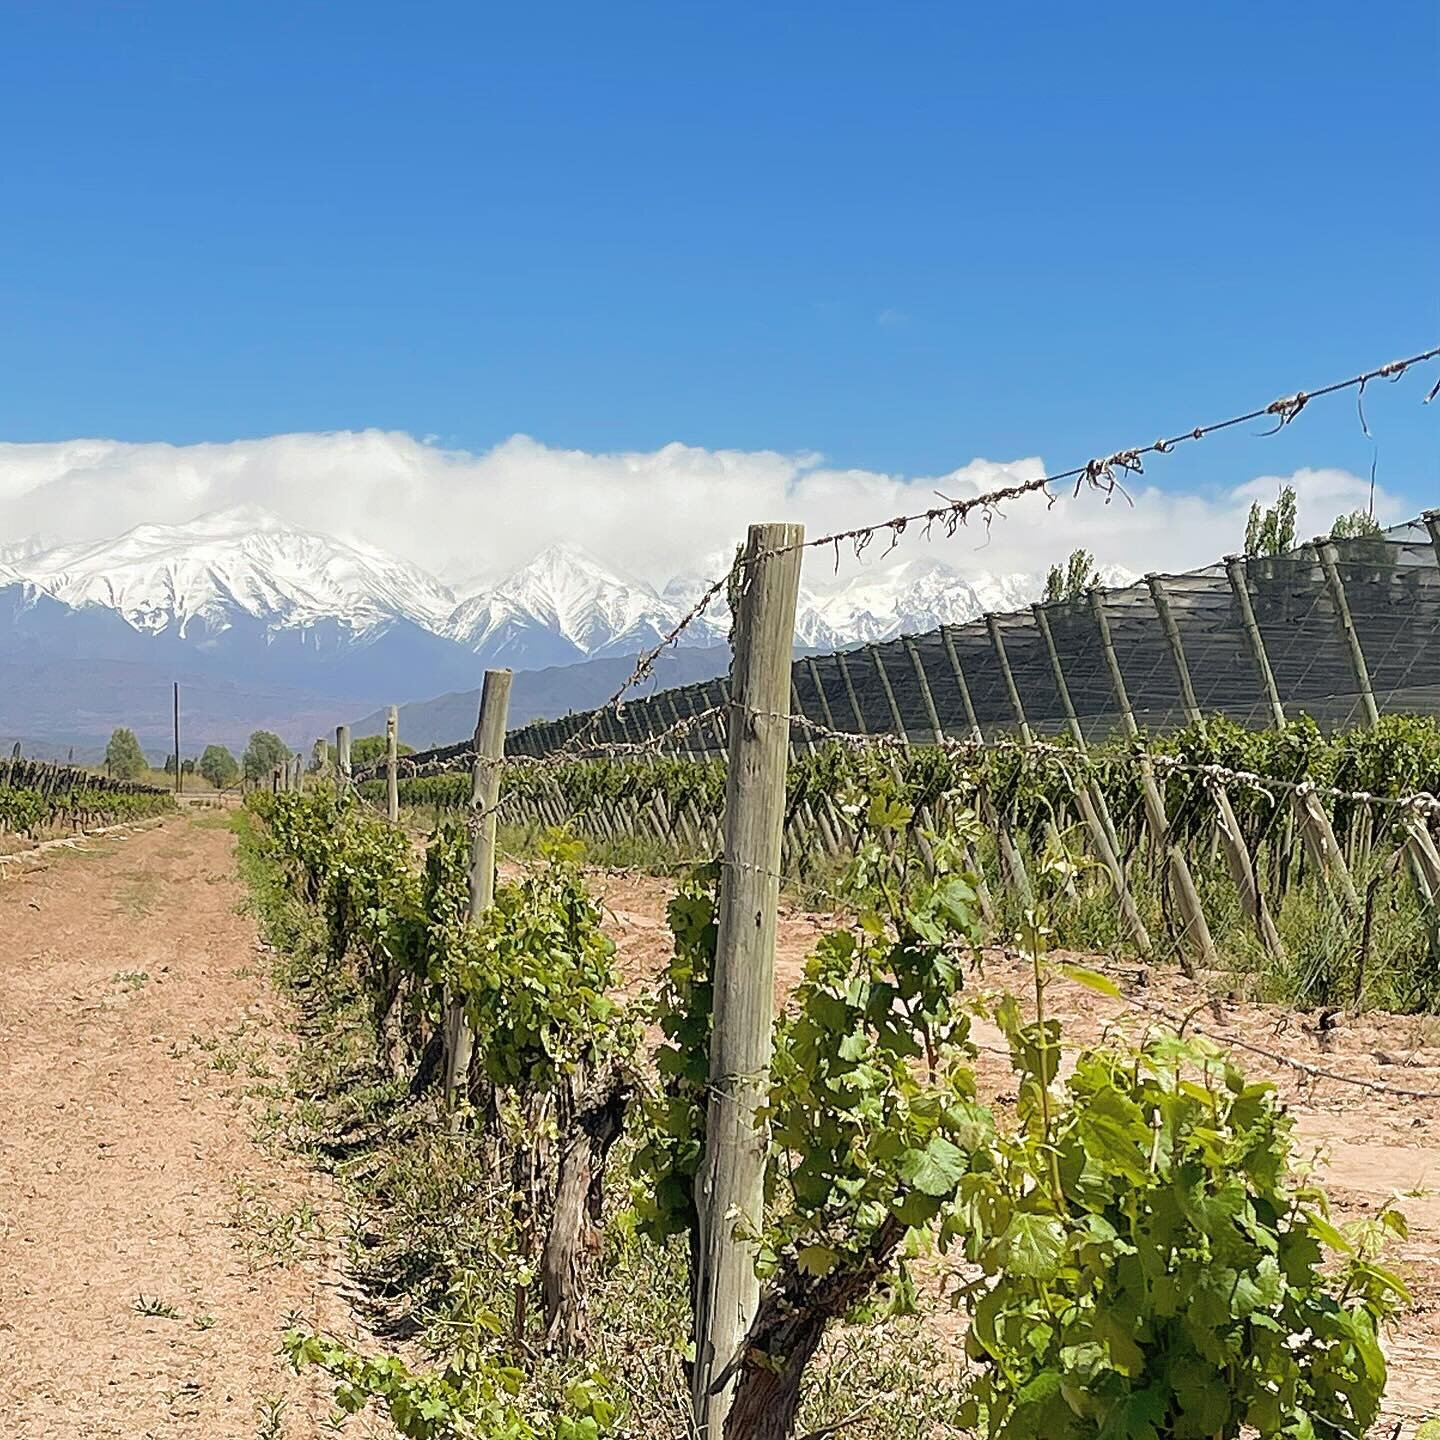 Sur les chemins du #Malbec dans la plaine de #Mendoza, au pied des #Andes ! 
Un aventure &agrave; d&eacute;couvrir au @comptoirgourmet 
#argentina #wine #andesmountains #alegria